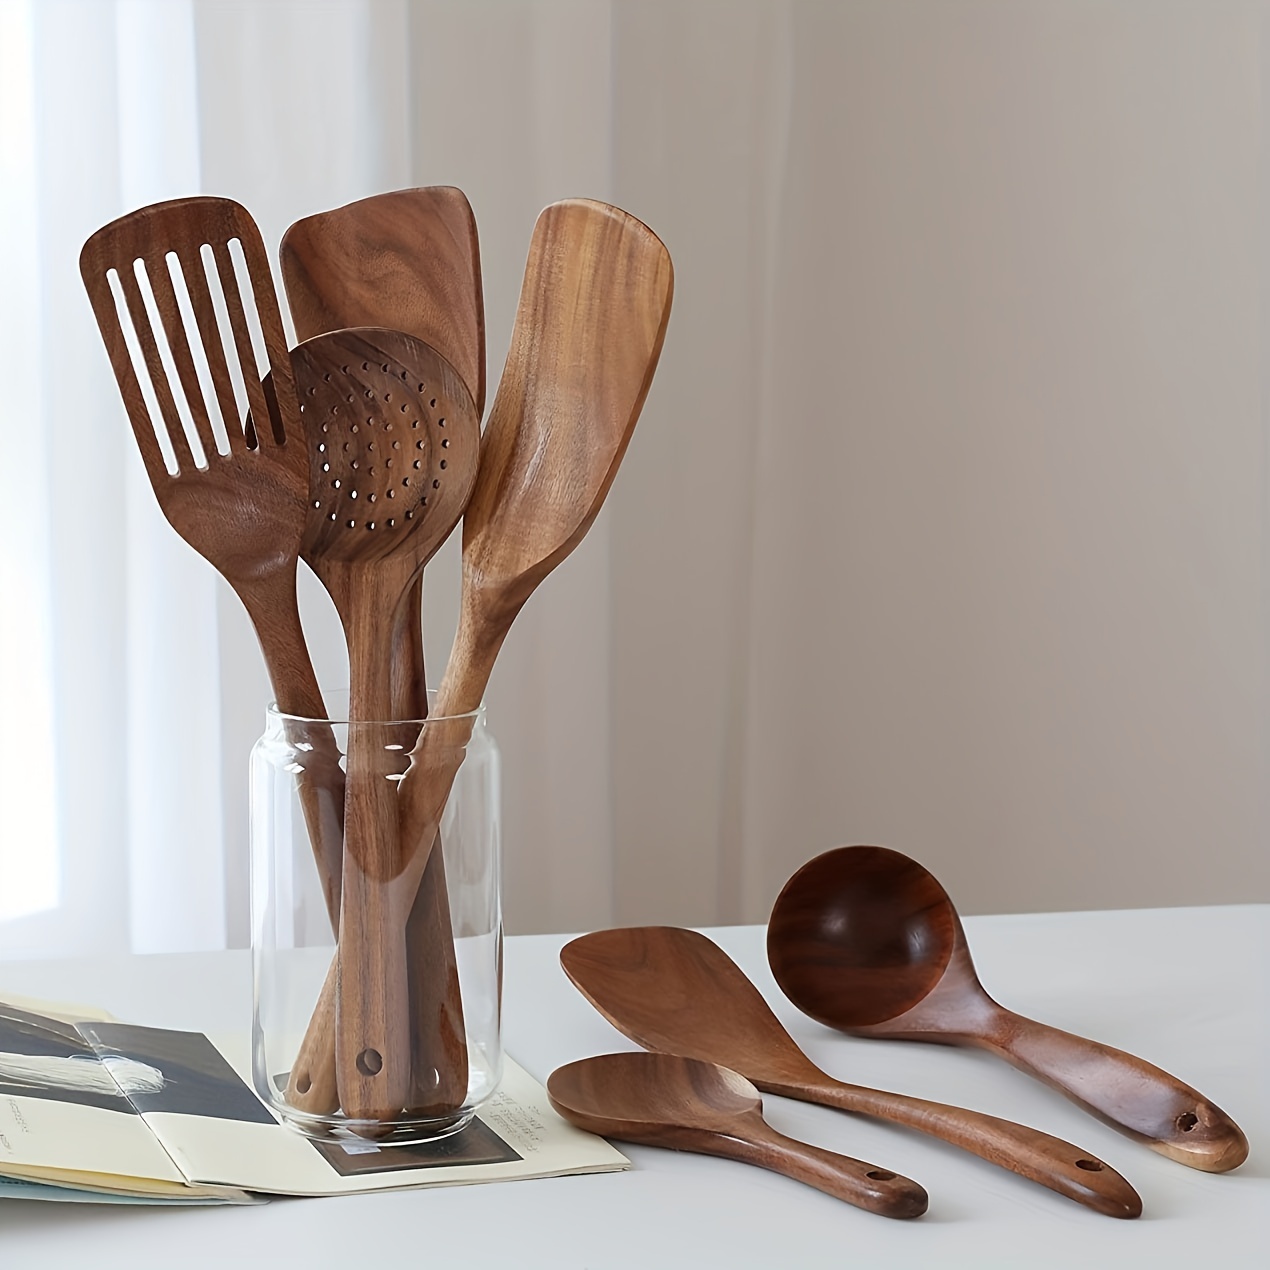 Wooden Cooking Utensils Wooden Spoons for Cooking,Nonstick Kitchen Utensil Set,Wooden Spoons Cooking Utensil Set Non Scratch Natural Teak Wooden